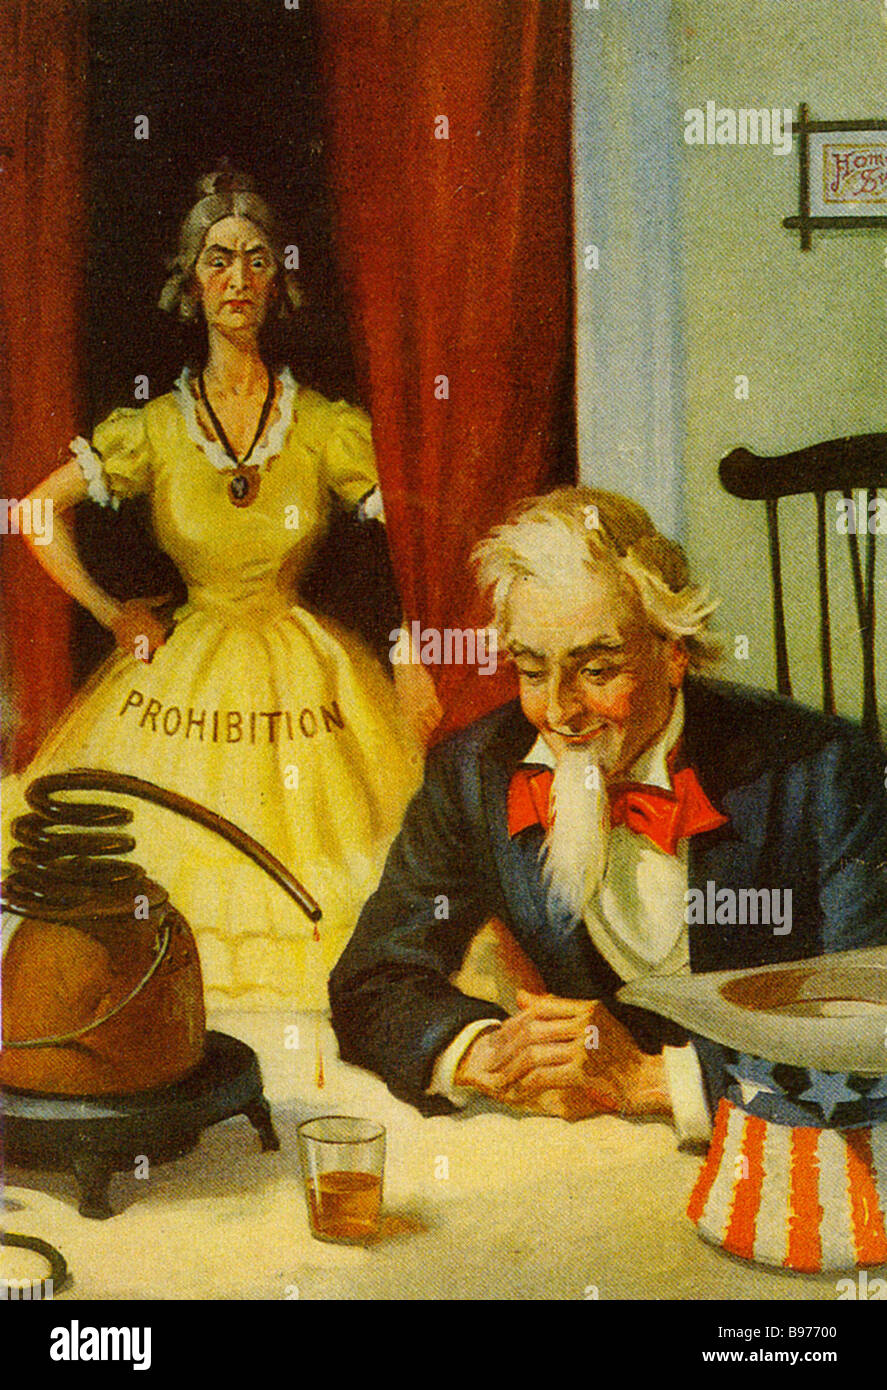 AMERIKANISCHEN PROHIBITION CARTOON über 1925 zeigt einen Stern konfrontiert Dame fangen ein Onkel Sam Charakter mit einem illegalen drink Stockfoto